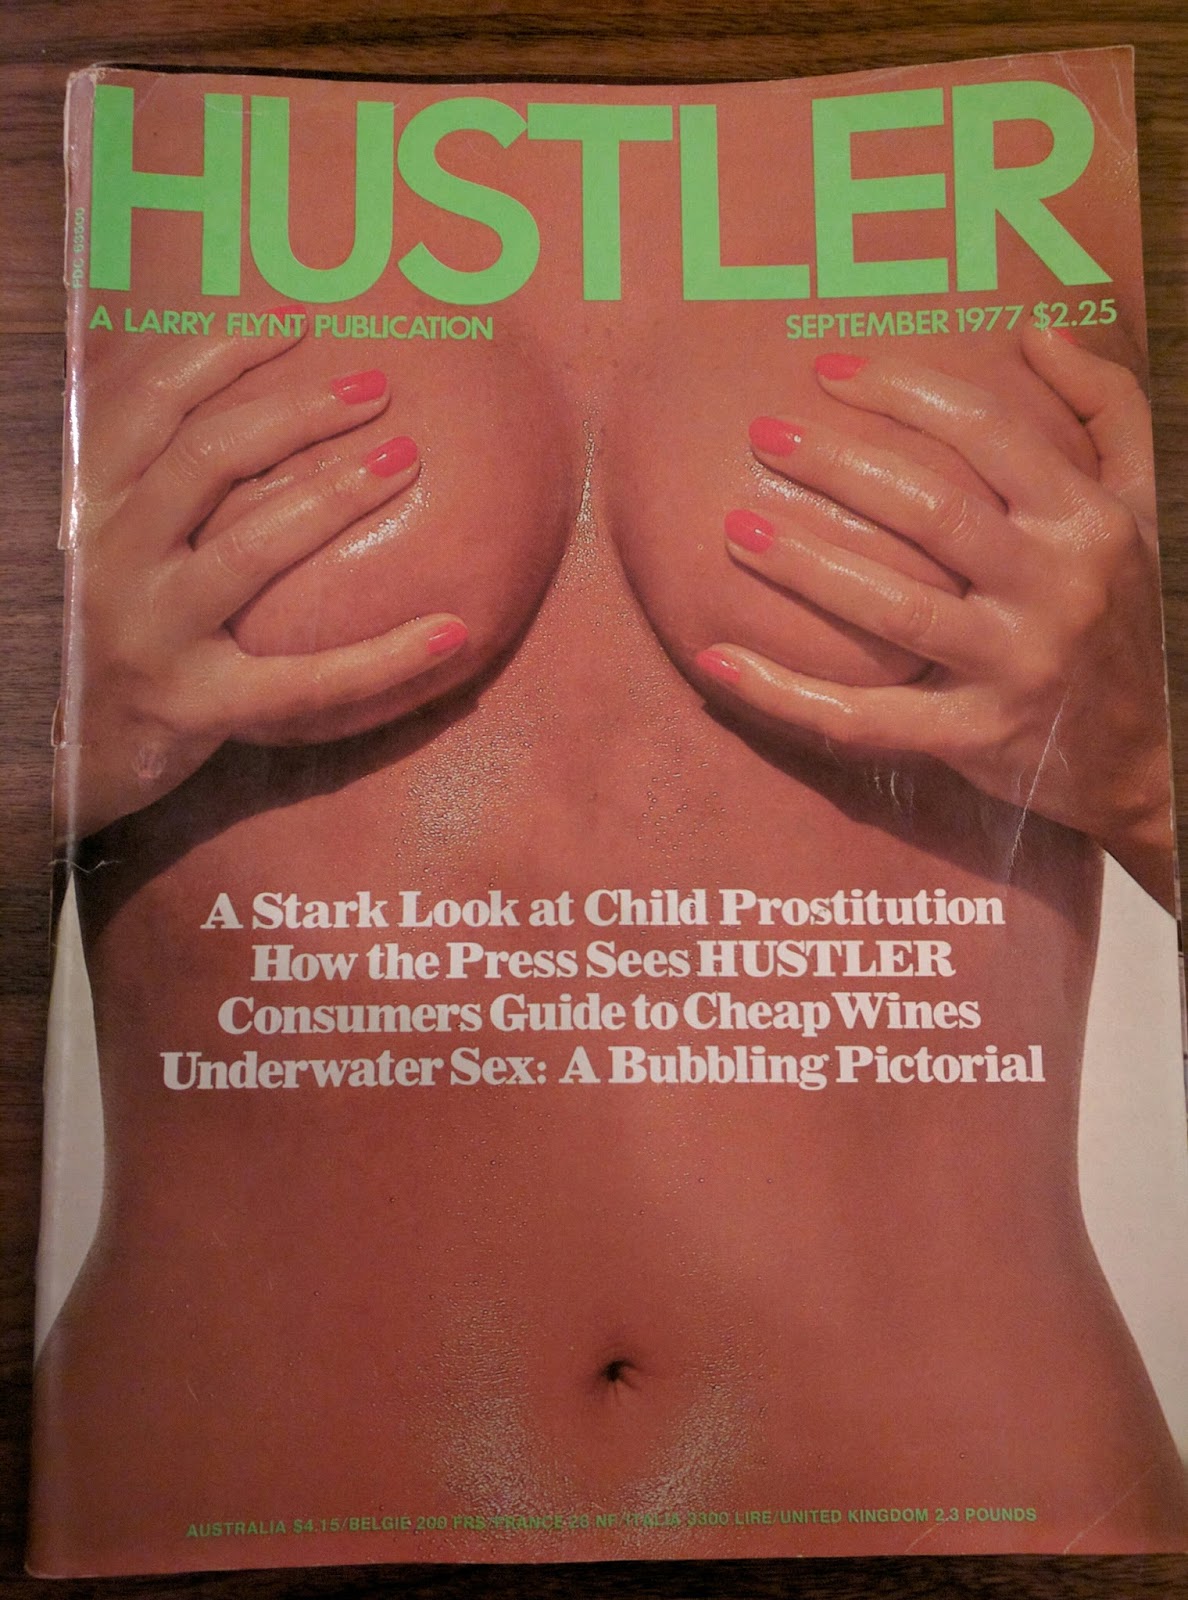 70s Hustler Vintage Porn - SSL: 1977 Hustler Review Series #2: X Rated Reviews